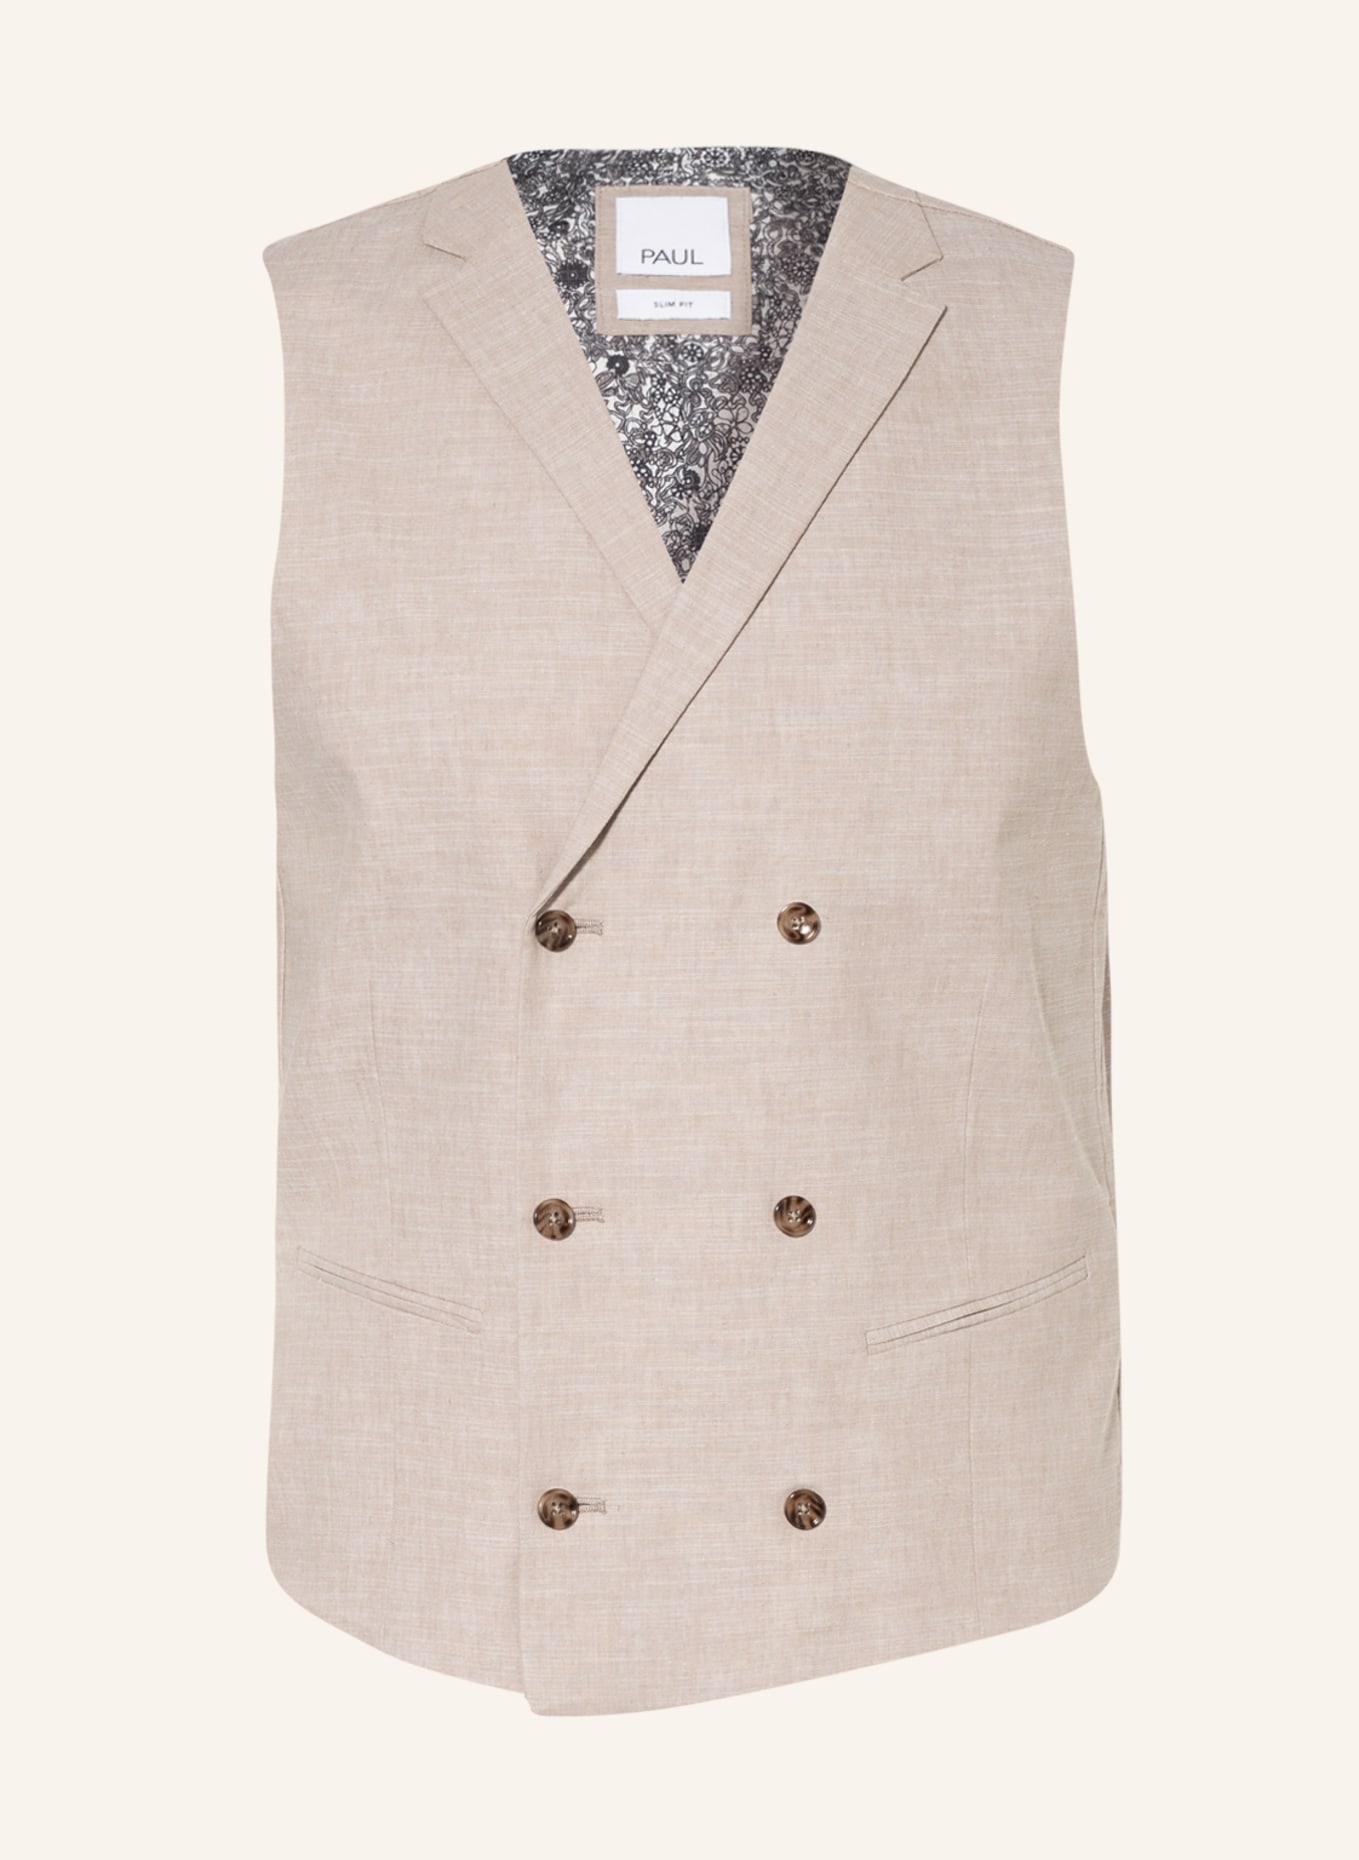 PAUL Suit vest slim fit with linen, Color: 003 Light Beige (Image 1)